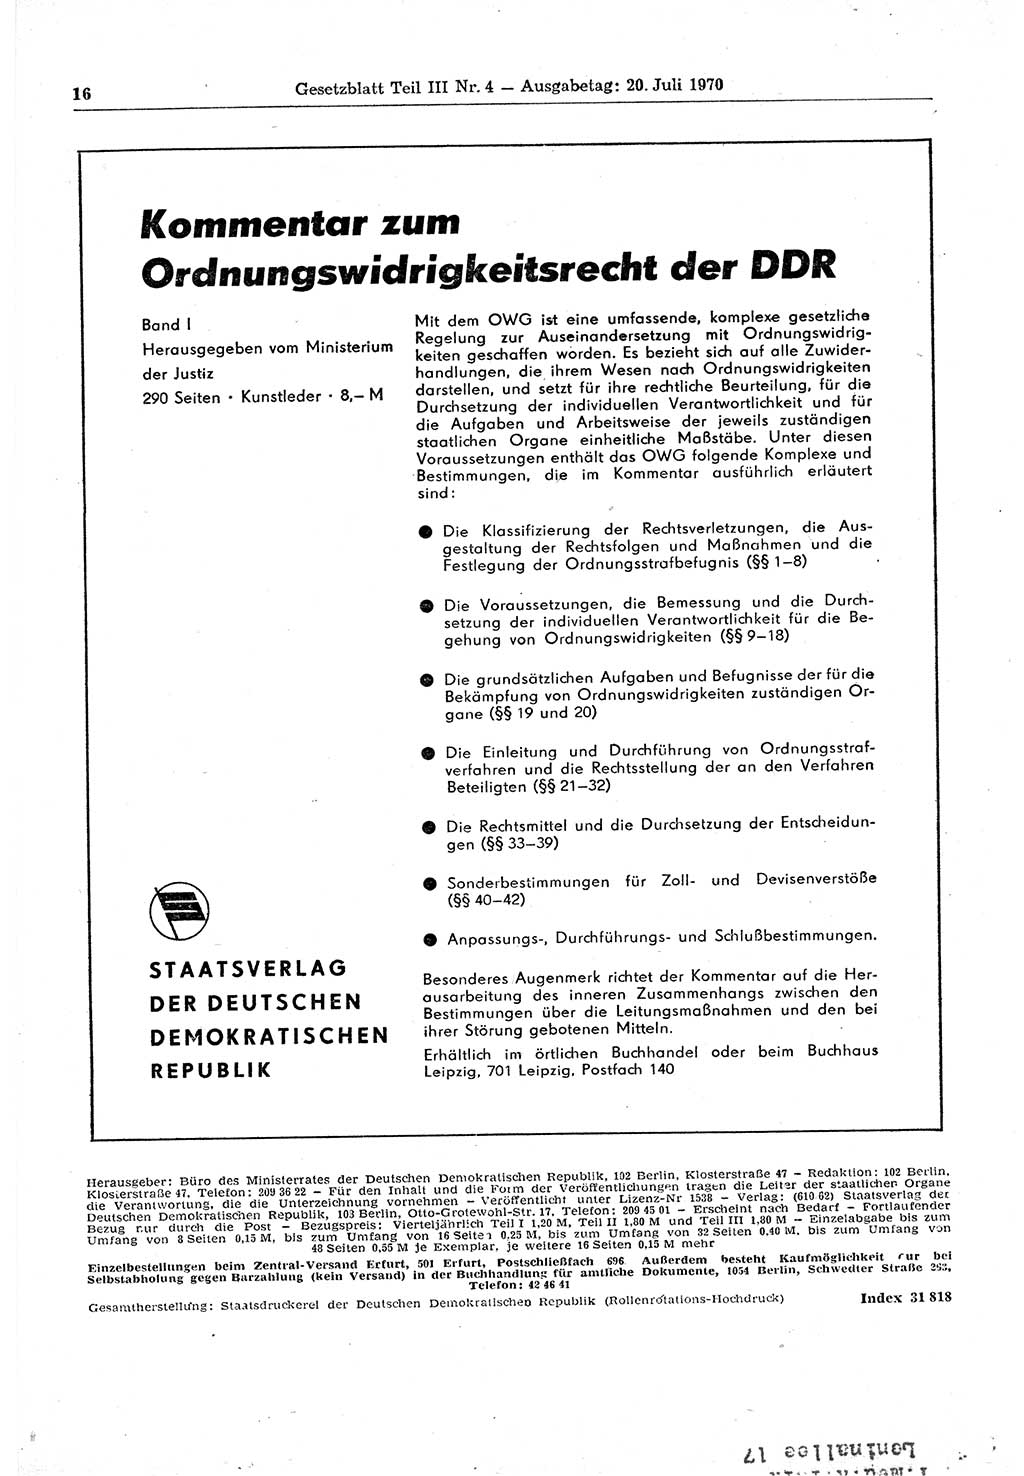 Gesetzblatt (GBl.) der Deutschen Demokratischen Republik (DDR) Teil ⅠⅠⅠ 1970, Seite 16 (GBl. DDR ⅠⅠⅠ 1970, S. 16)